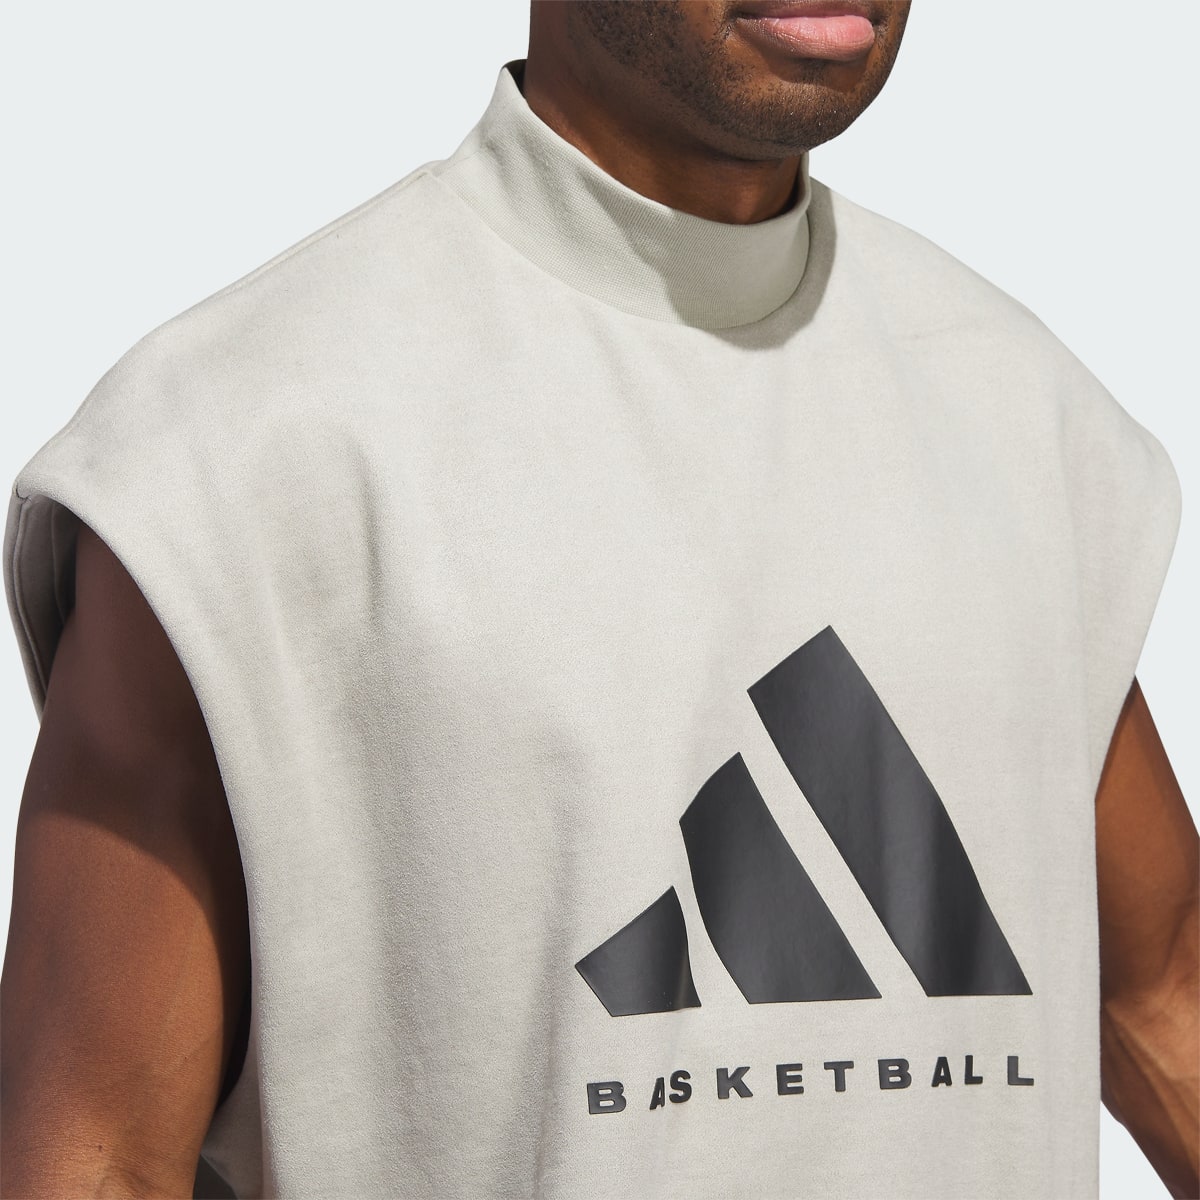 Adidas Bluza Basketball Sueded Sleeveless. 6